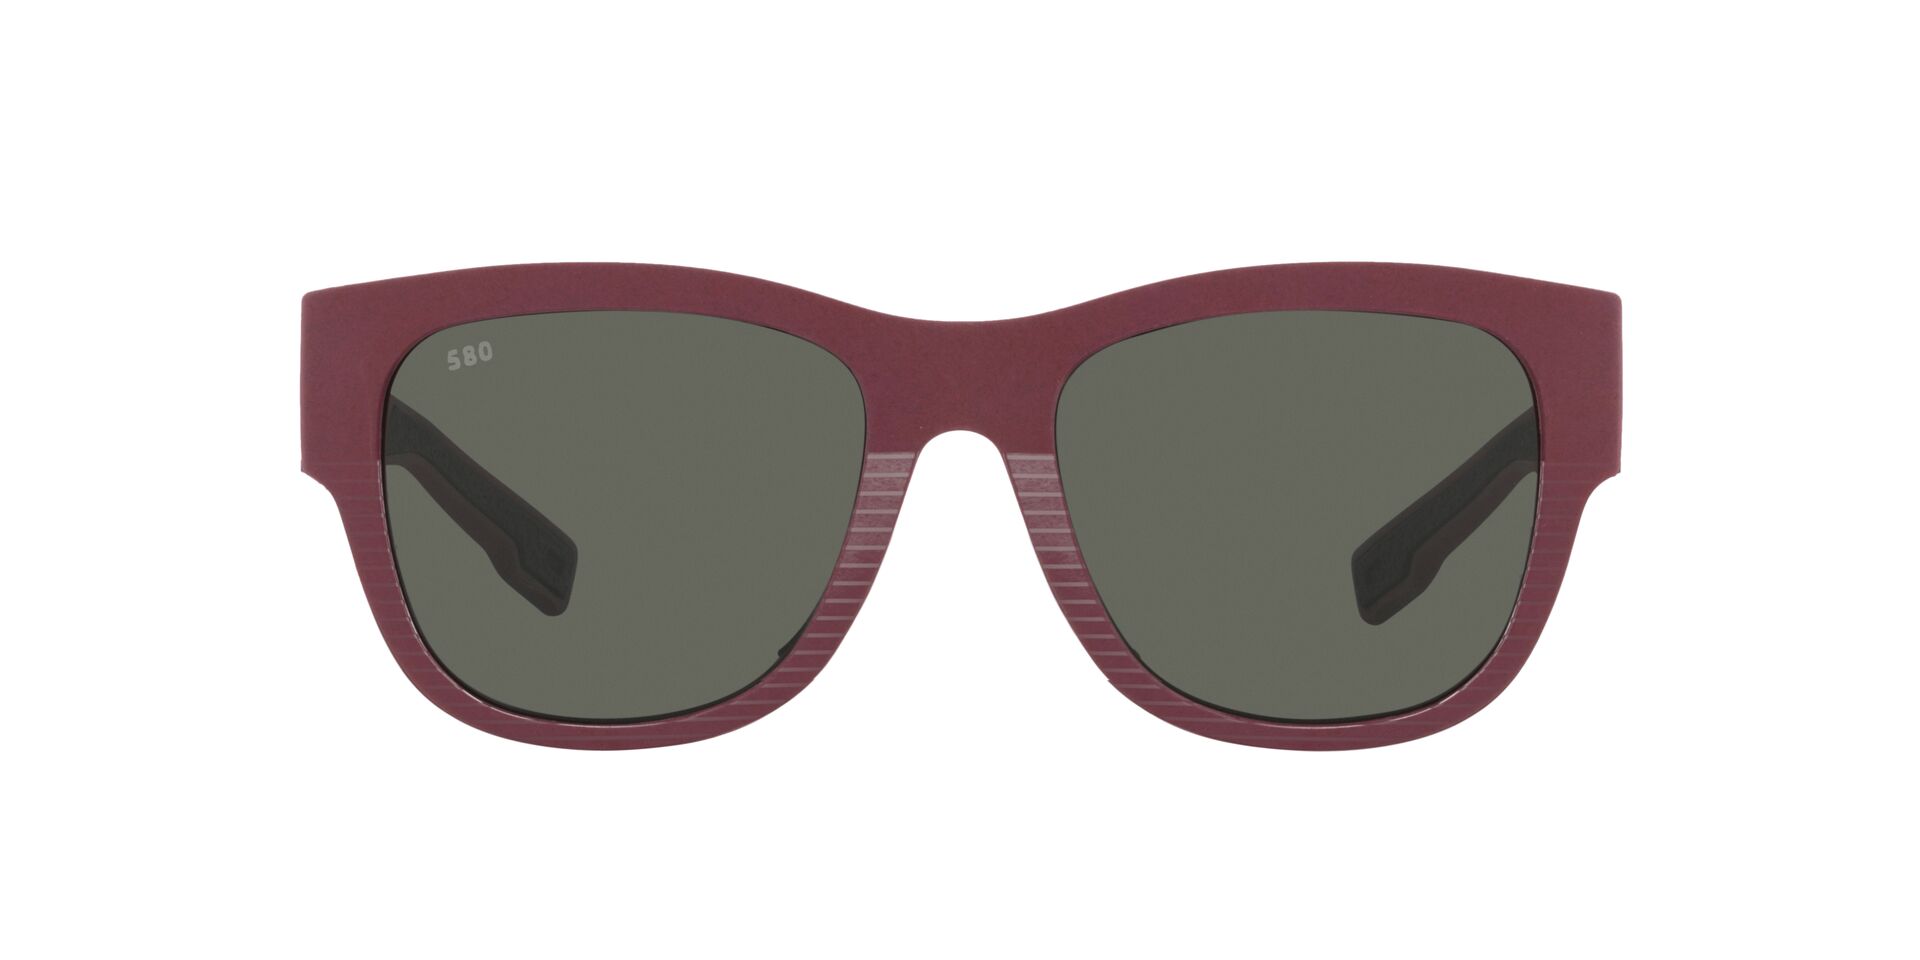 Solari Lentes de sol  Gafas Polarizadas para Hombre y Mujer